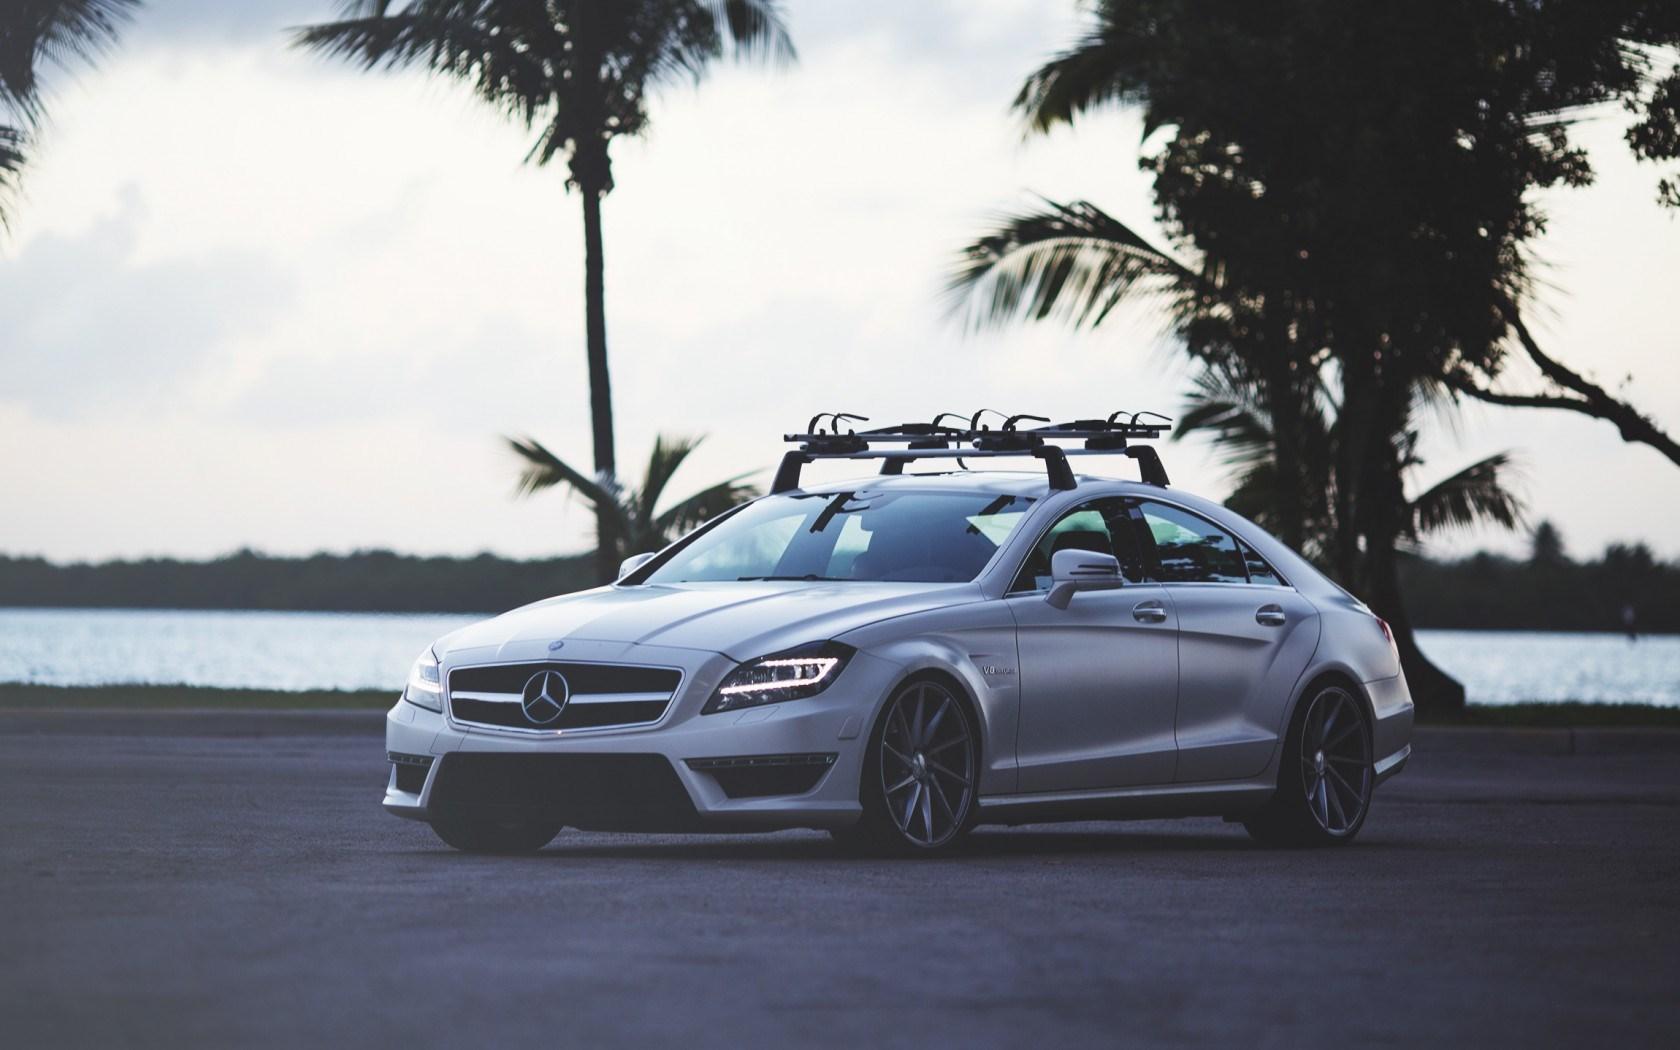 Mercedes Benz CLS 63 AMG Car Tuning HD Desktop Wallpaper, Widescreen, High Definition